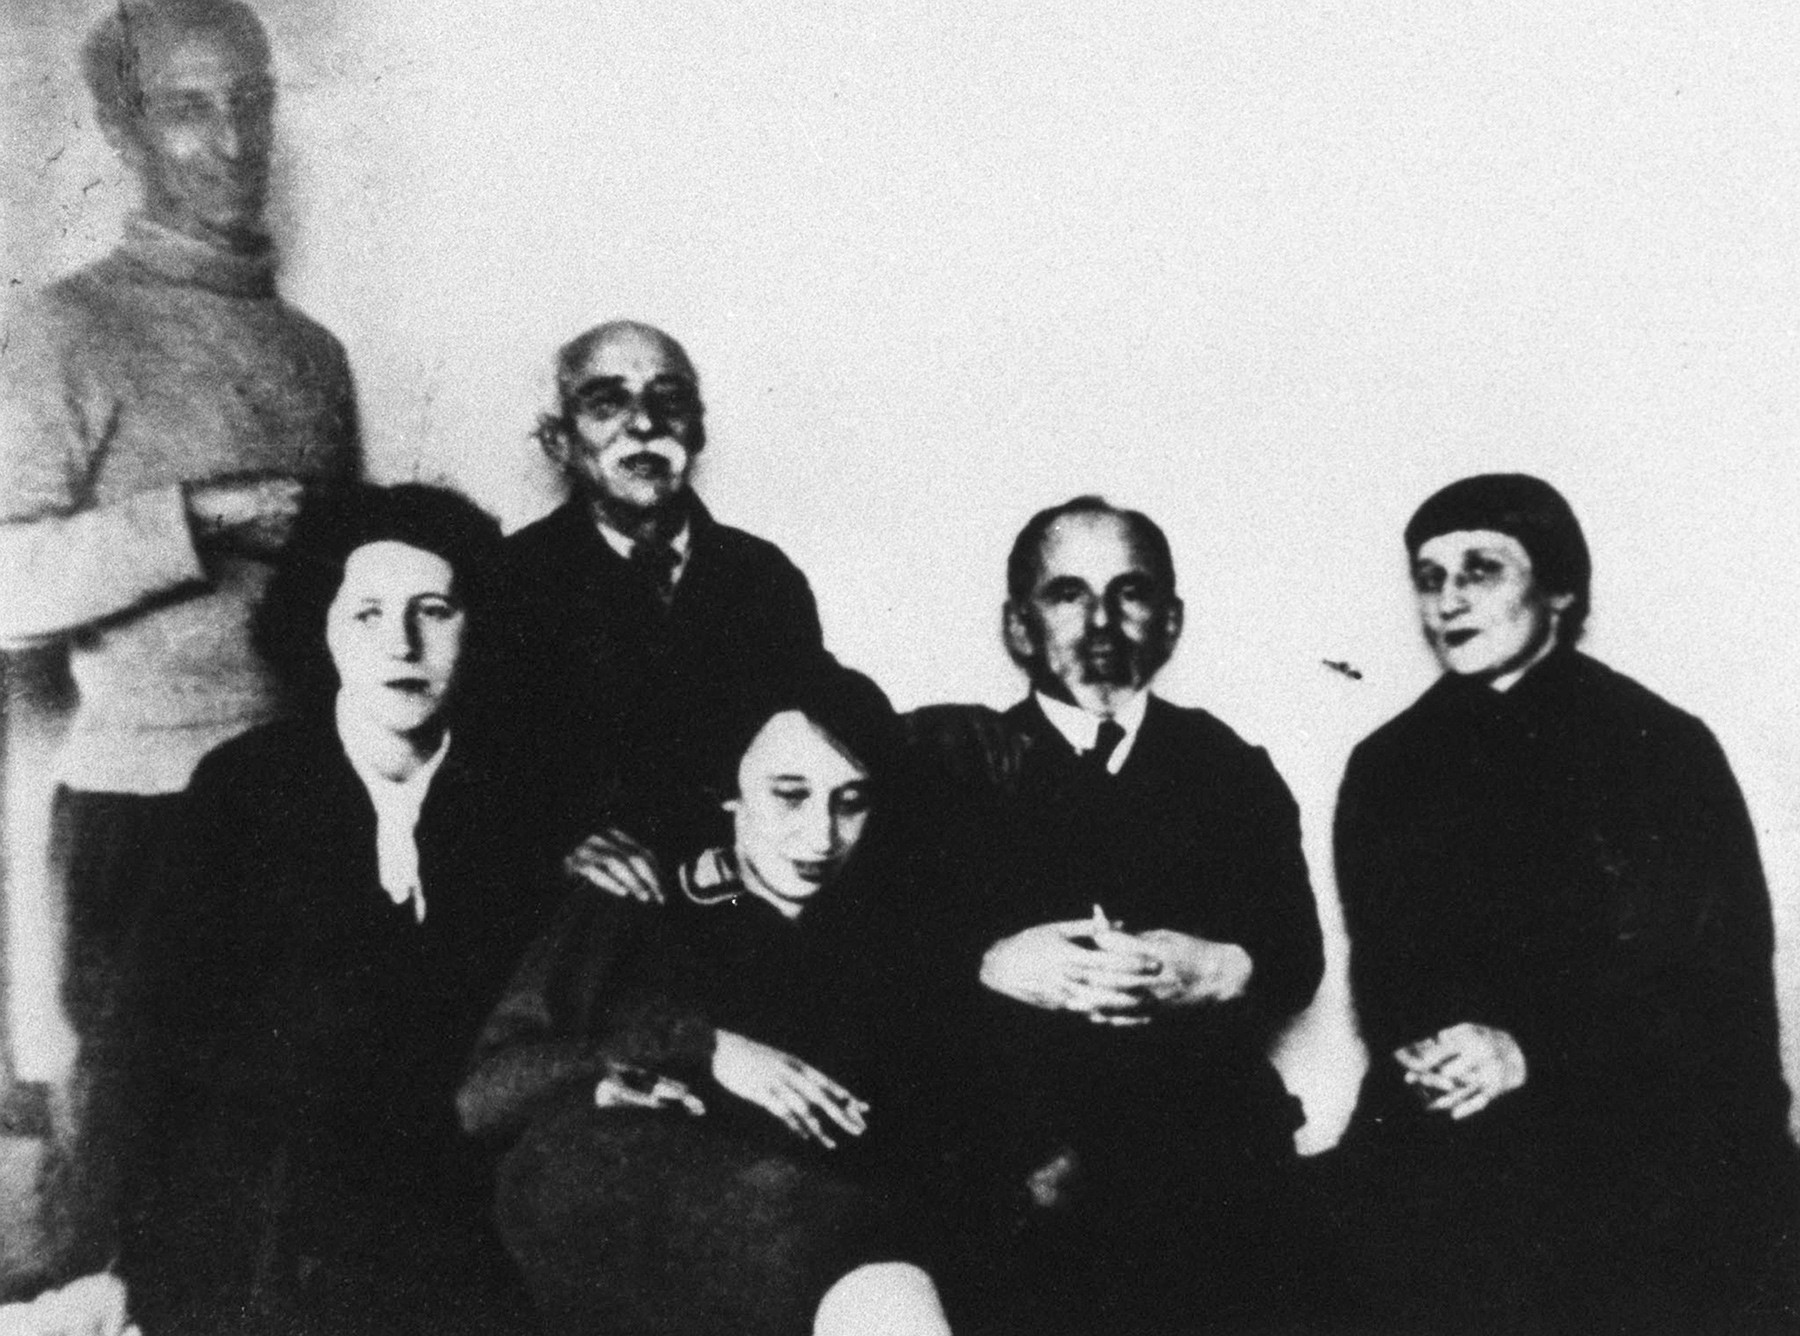 モスクワ、1933-1934。アンナ・アフマートワとマンデリシュタームの家族。左から右：アンナ・アフマートワ、オシップ・マンデリシュターム、マリア・メトロヴィフ、オシップの父であるエミル・マンデリシュタム、オシップの妻のナデージダ・マンデリシュターム、オシップの弟、アレクサンドル・マンデリシュターム。